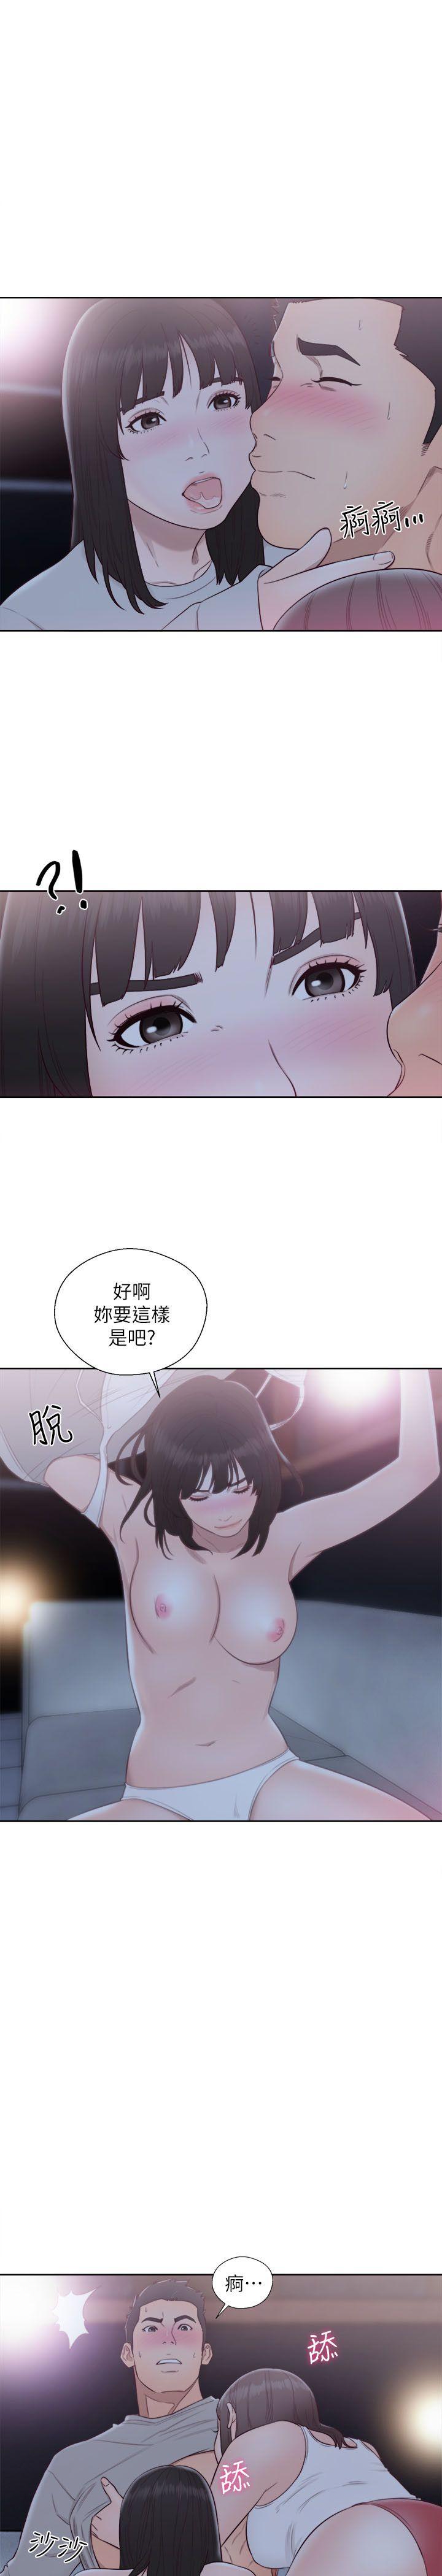 韩国污漫画 解禁:初始的快感 第63话-允斋和夏恩的身体服务 30